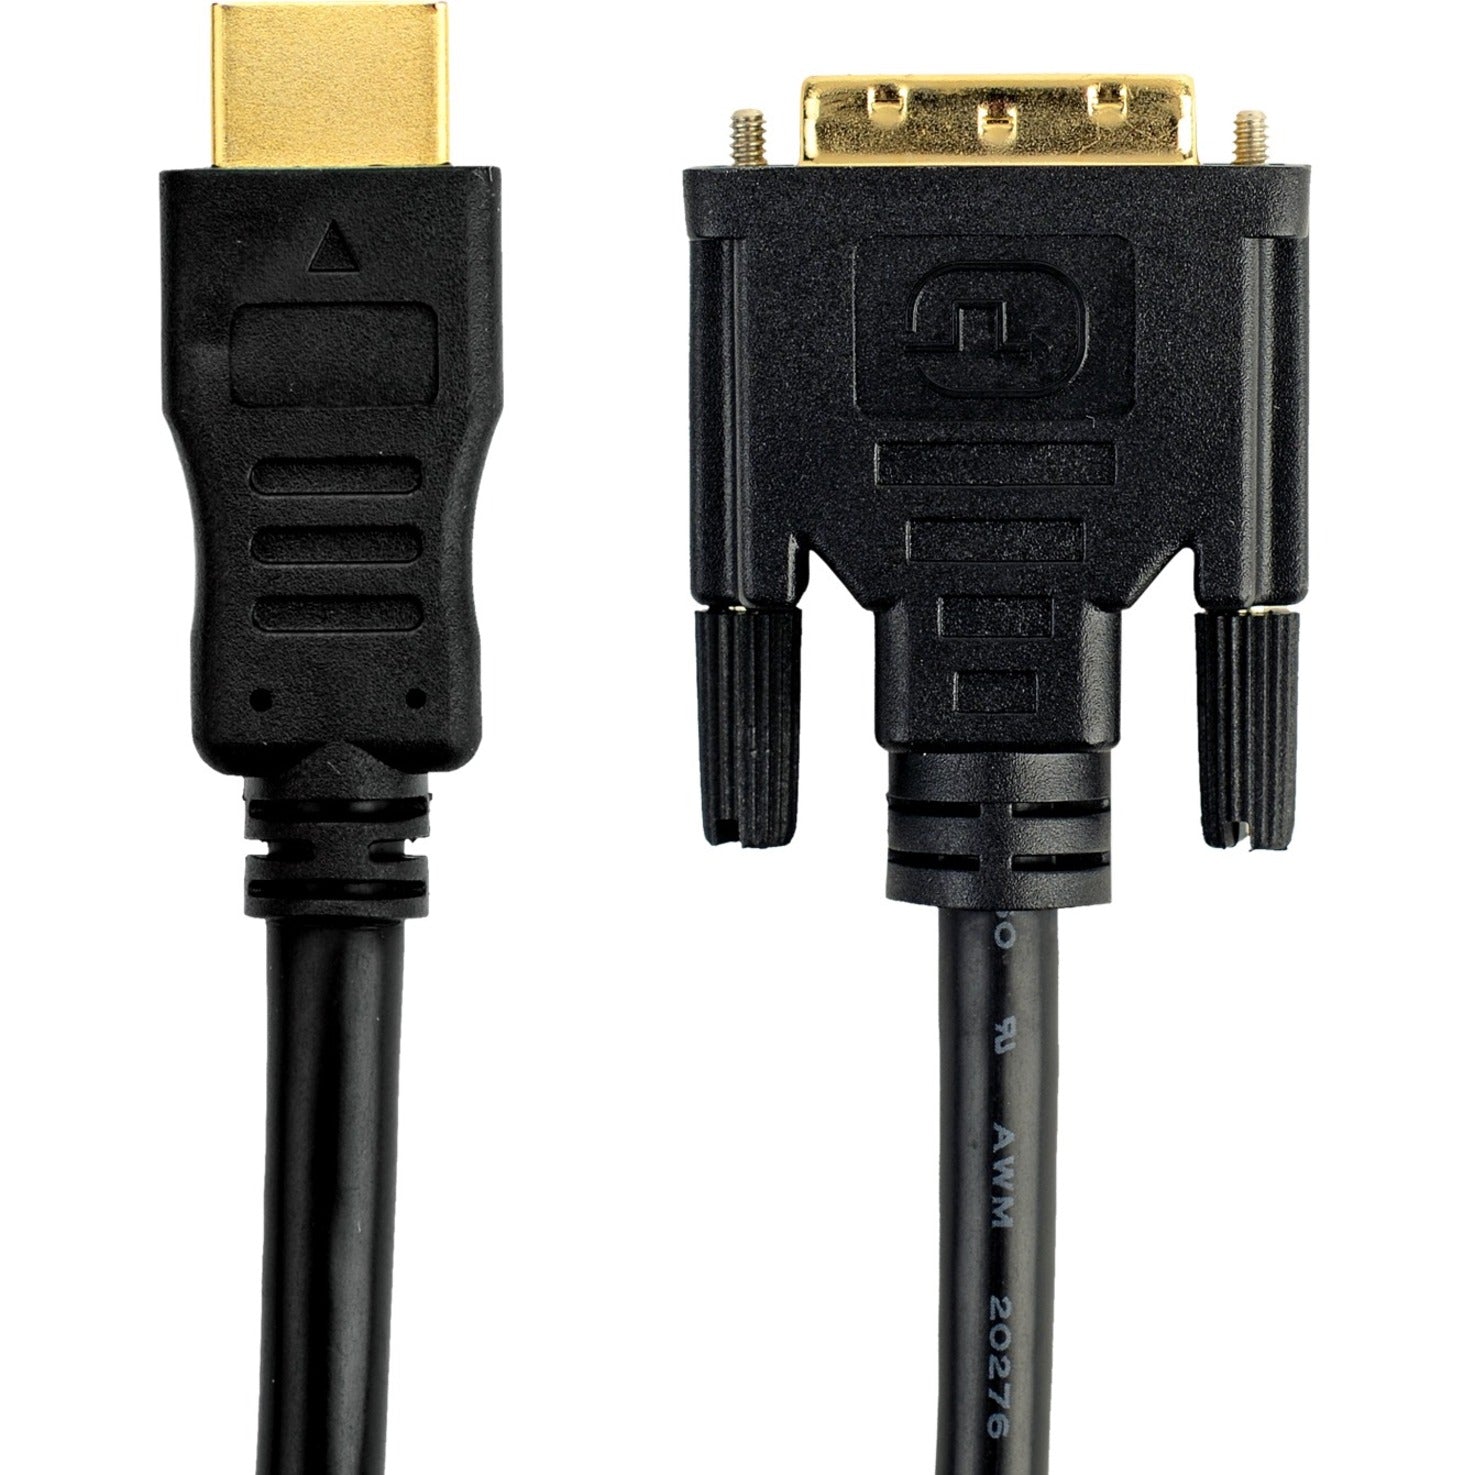 Cable HDMI a DVI Belkin F2E8242b03 3 pies Garantía de por vida Reemplaza la serie F2E8171